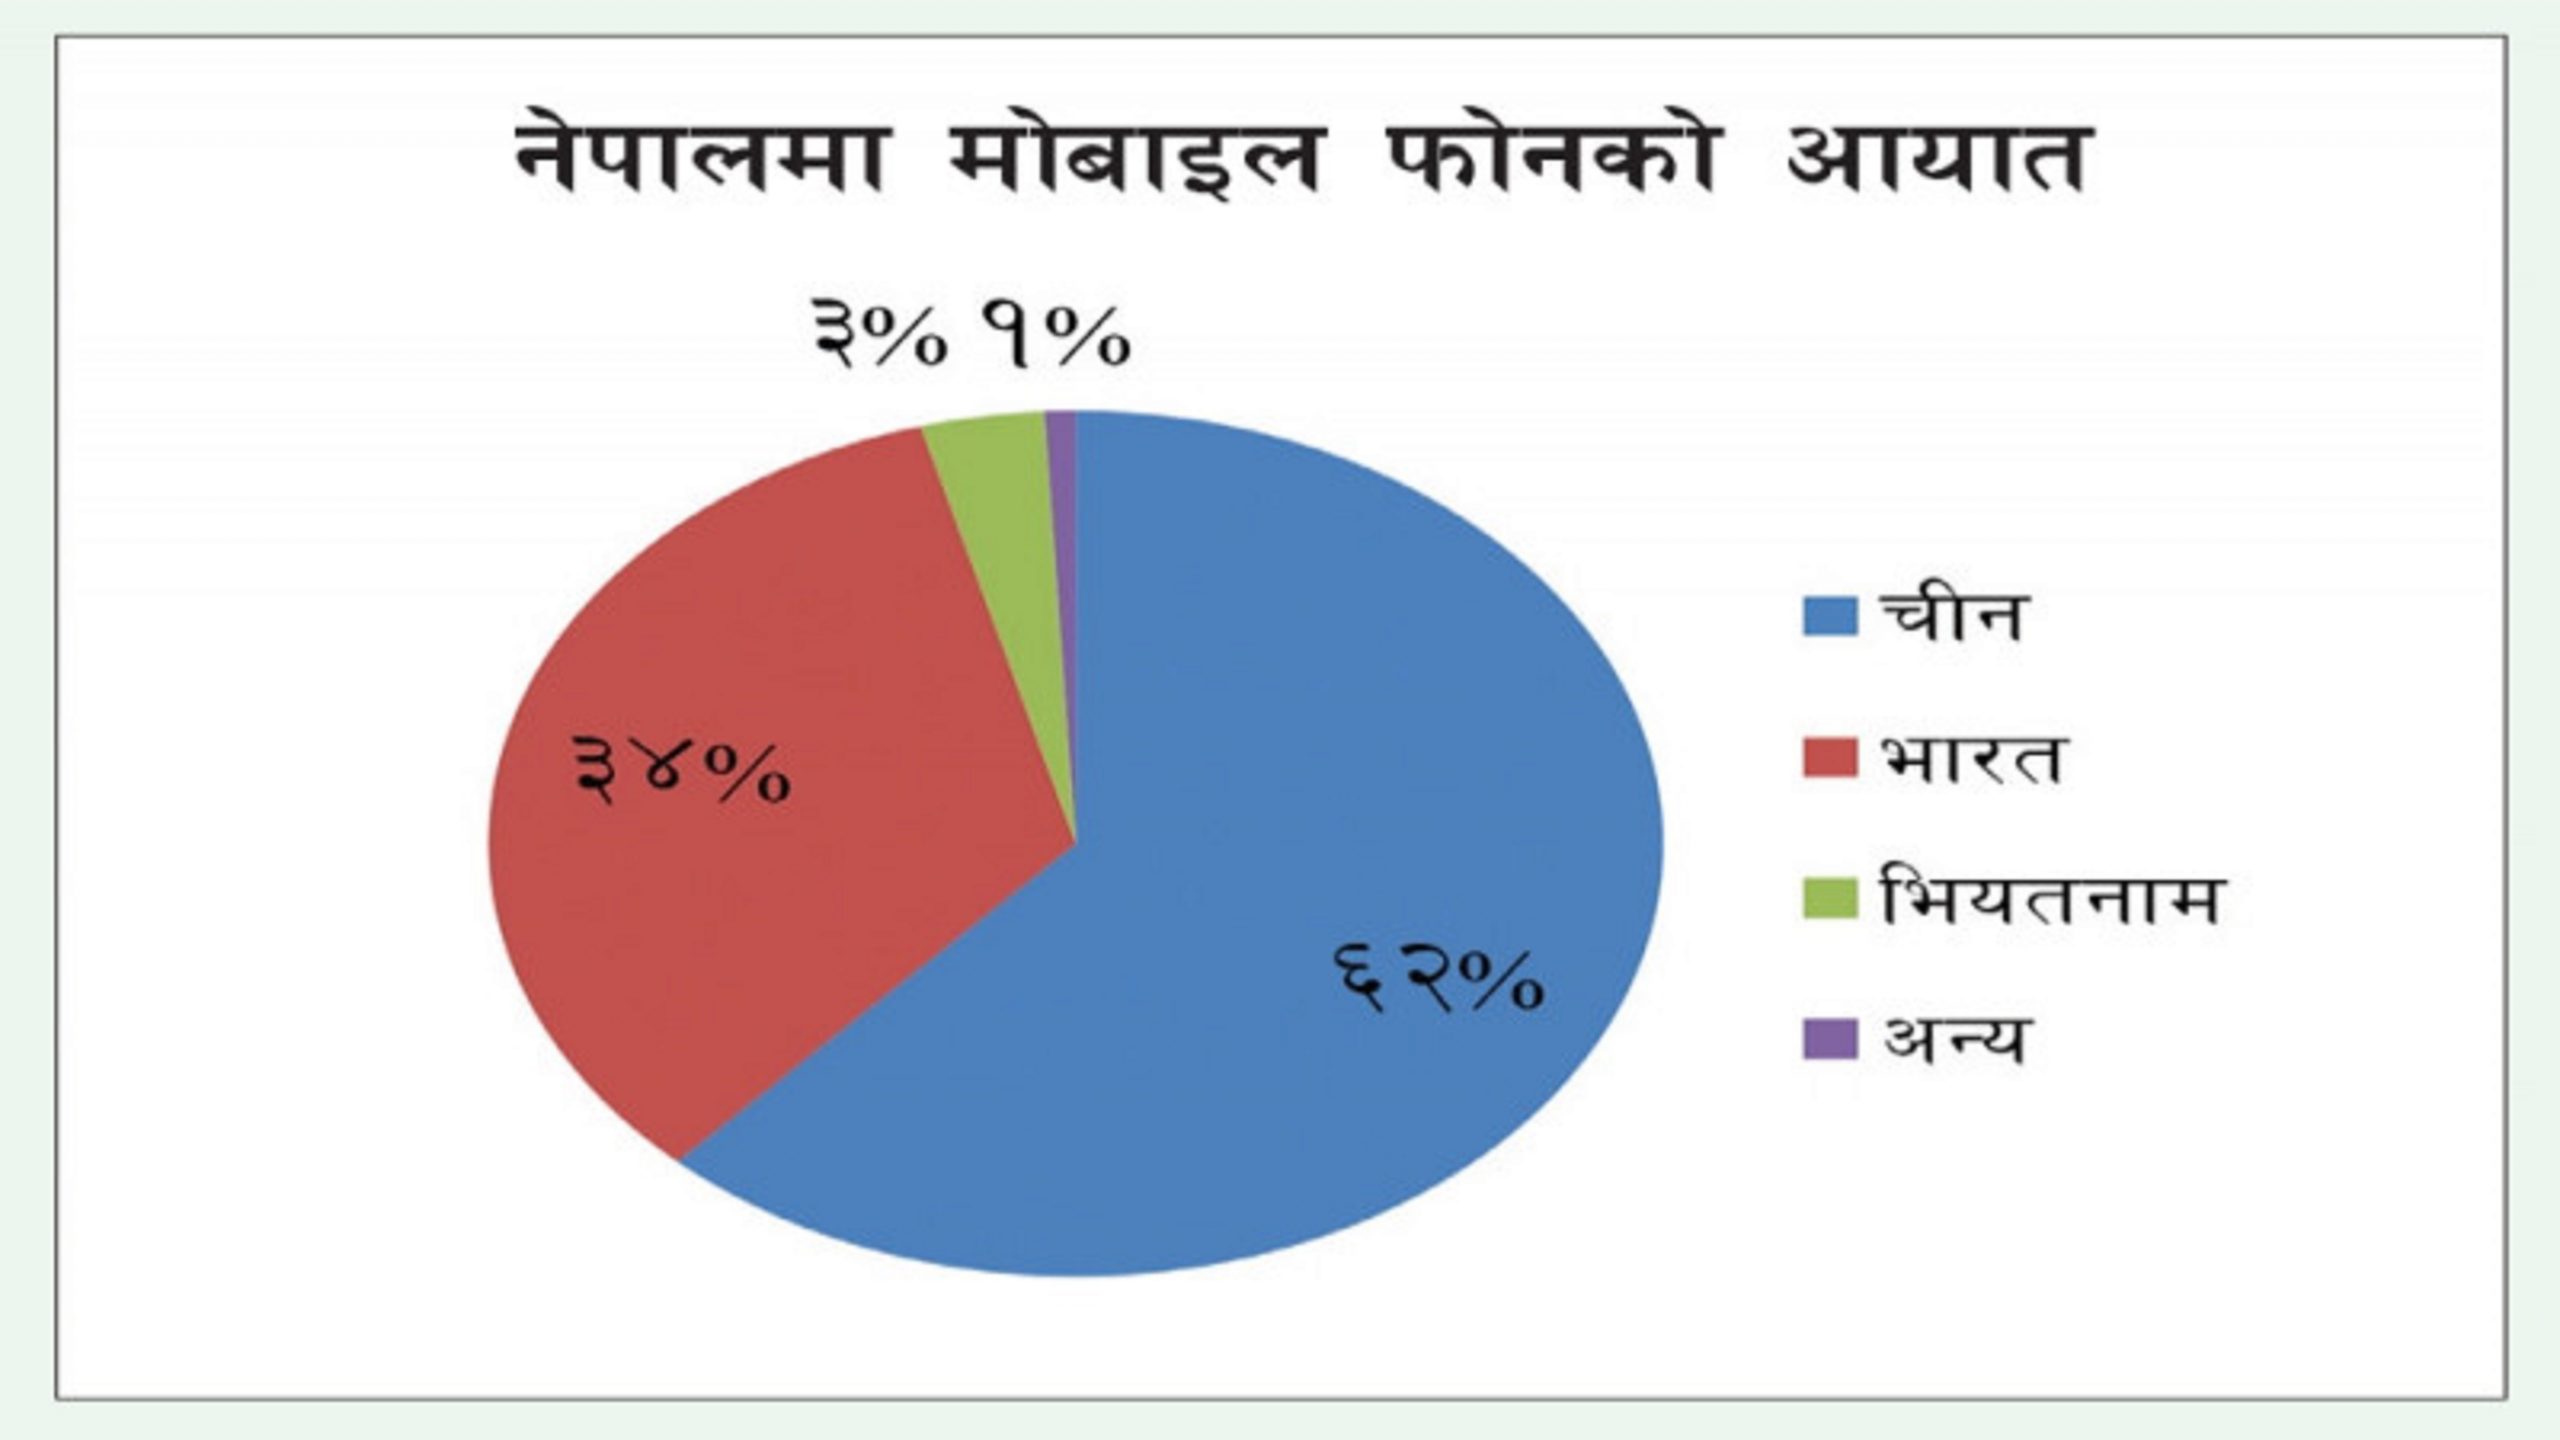 नेपालमा गत आर्थिक वर्षमा रू. ३७ अर्बको मोबाइल फोन आयात